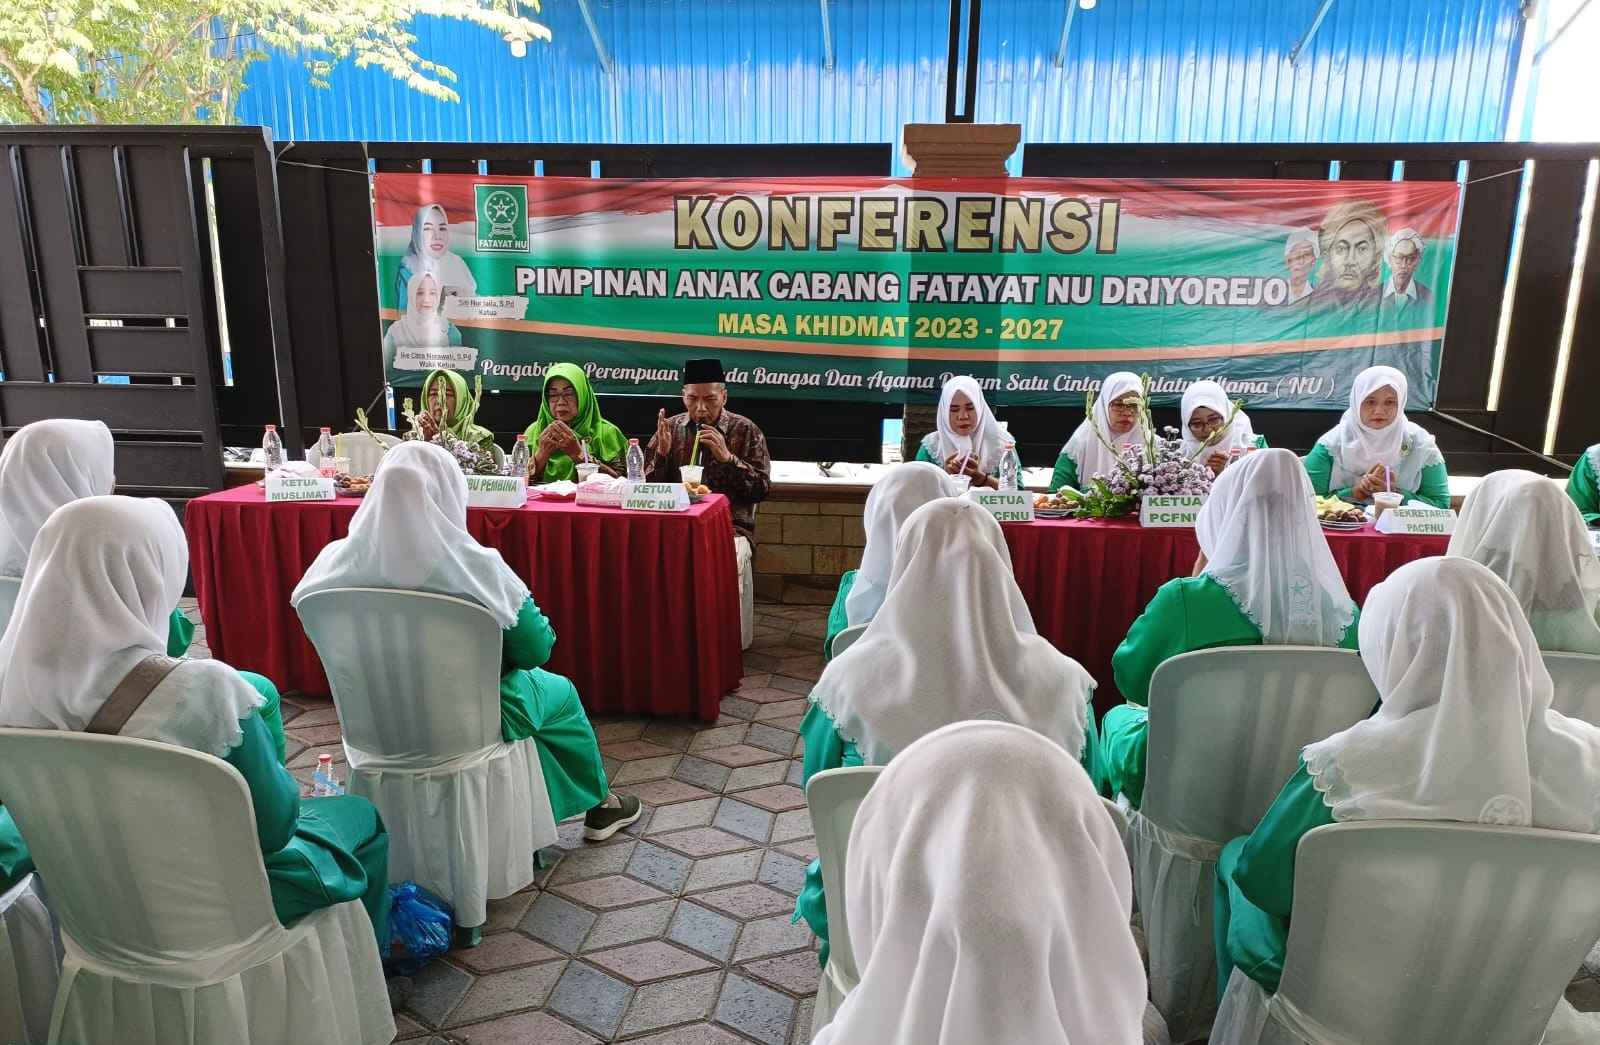 Konferensi Pimpinan Anak Cabang Fatayat NU Driyorejo 2023 - 2027 digelar pada Ahad (26/11/2023) di Ranting NU Randegansari, Driyorejo Gresik. Foto: dok Fatayat NU Driyorejo/NUGres